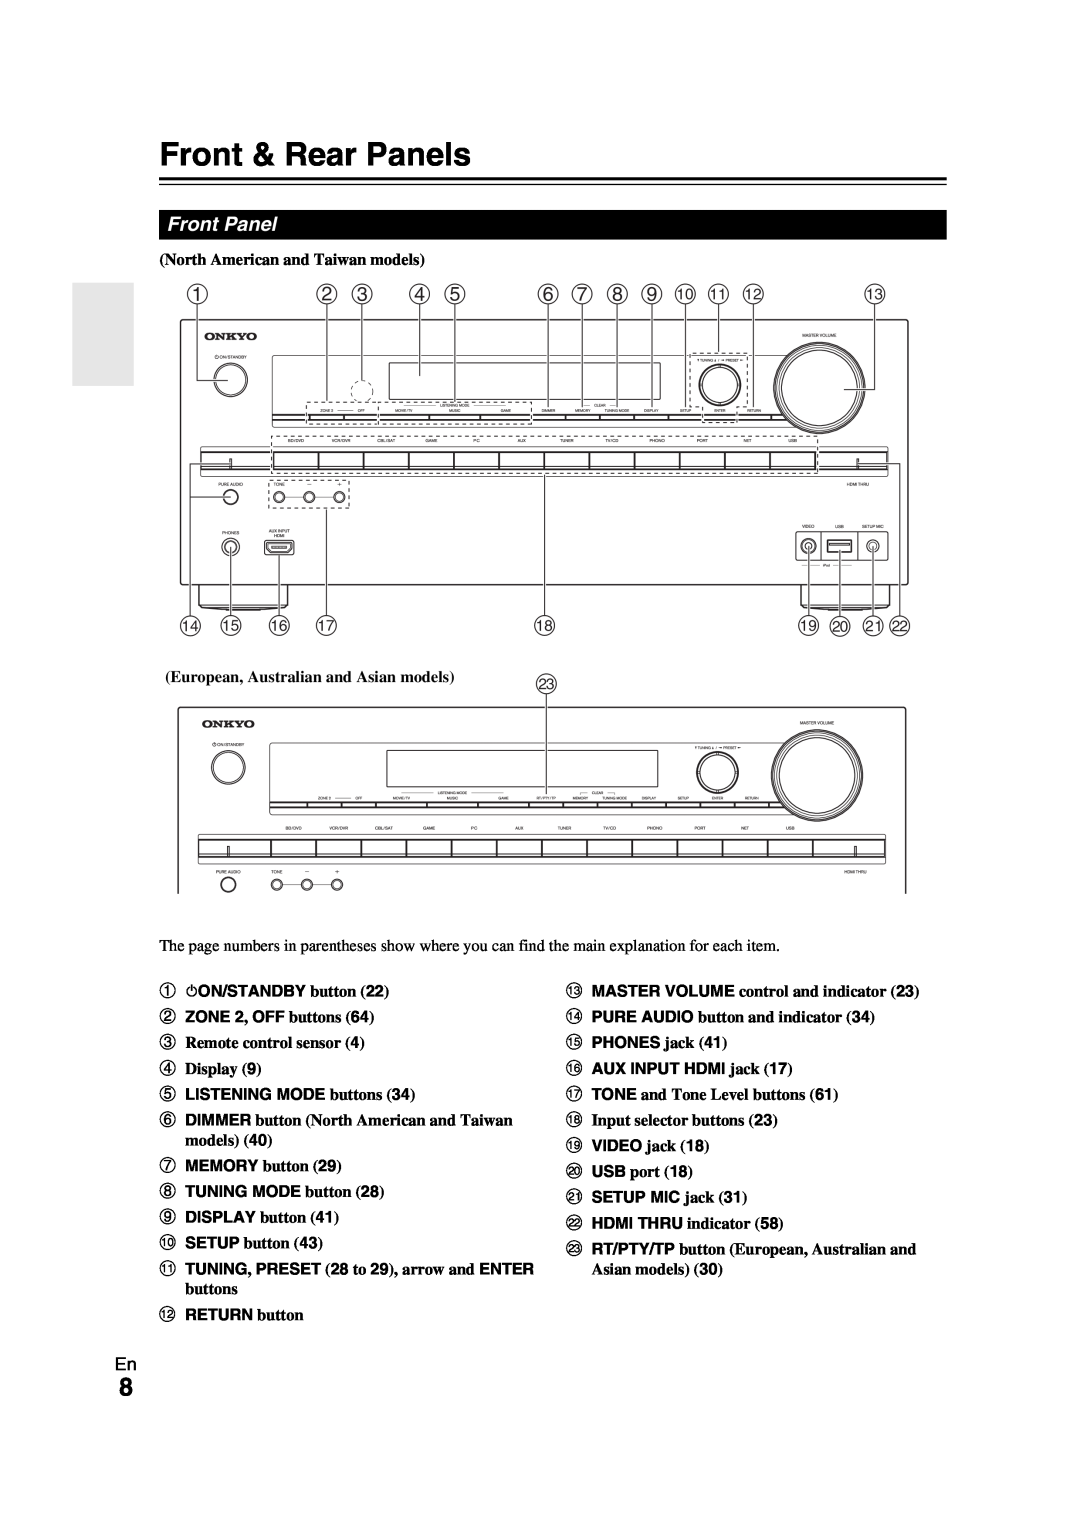 Onkyo TX-NR709 Front & Rear Panels, b c d e, f g h i j k l, n o p q, s t u, Front Panel, eLISTENING MODE buttons 